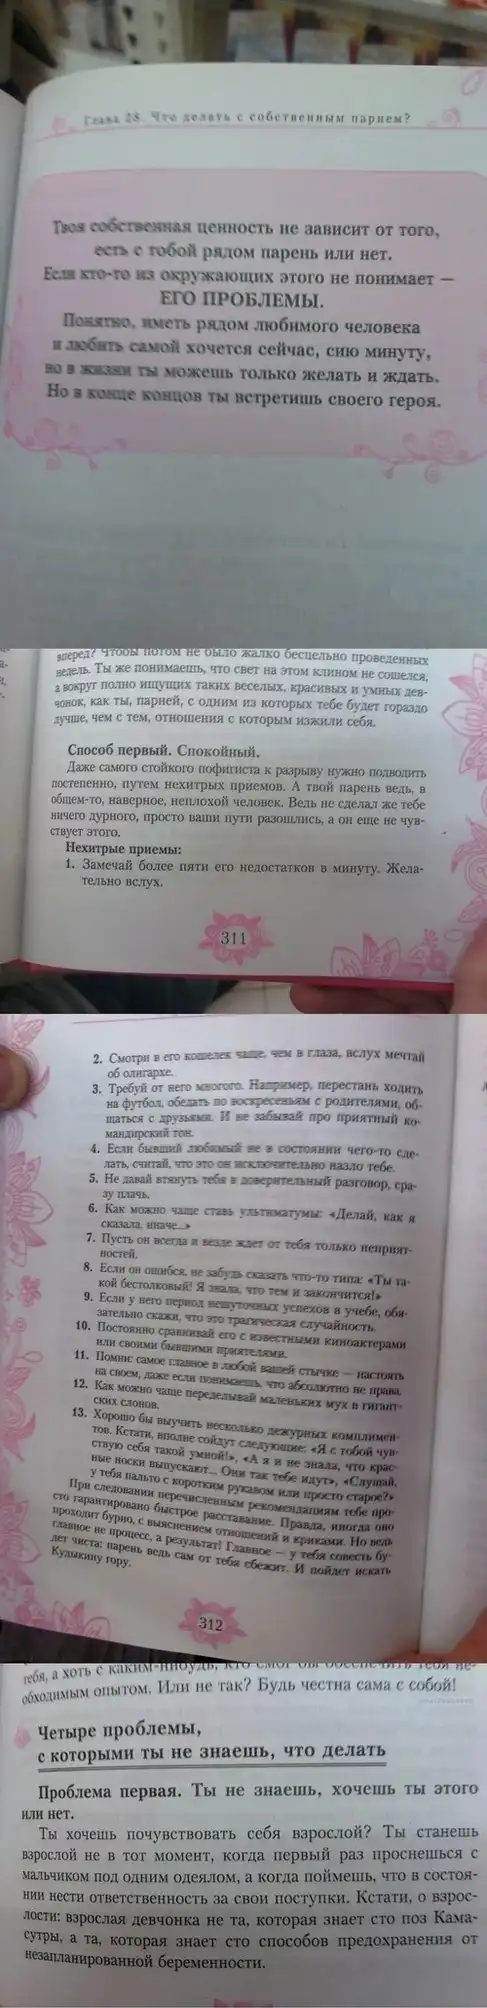 Энциклопедия для современных девушек